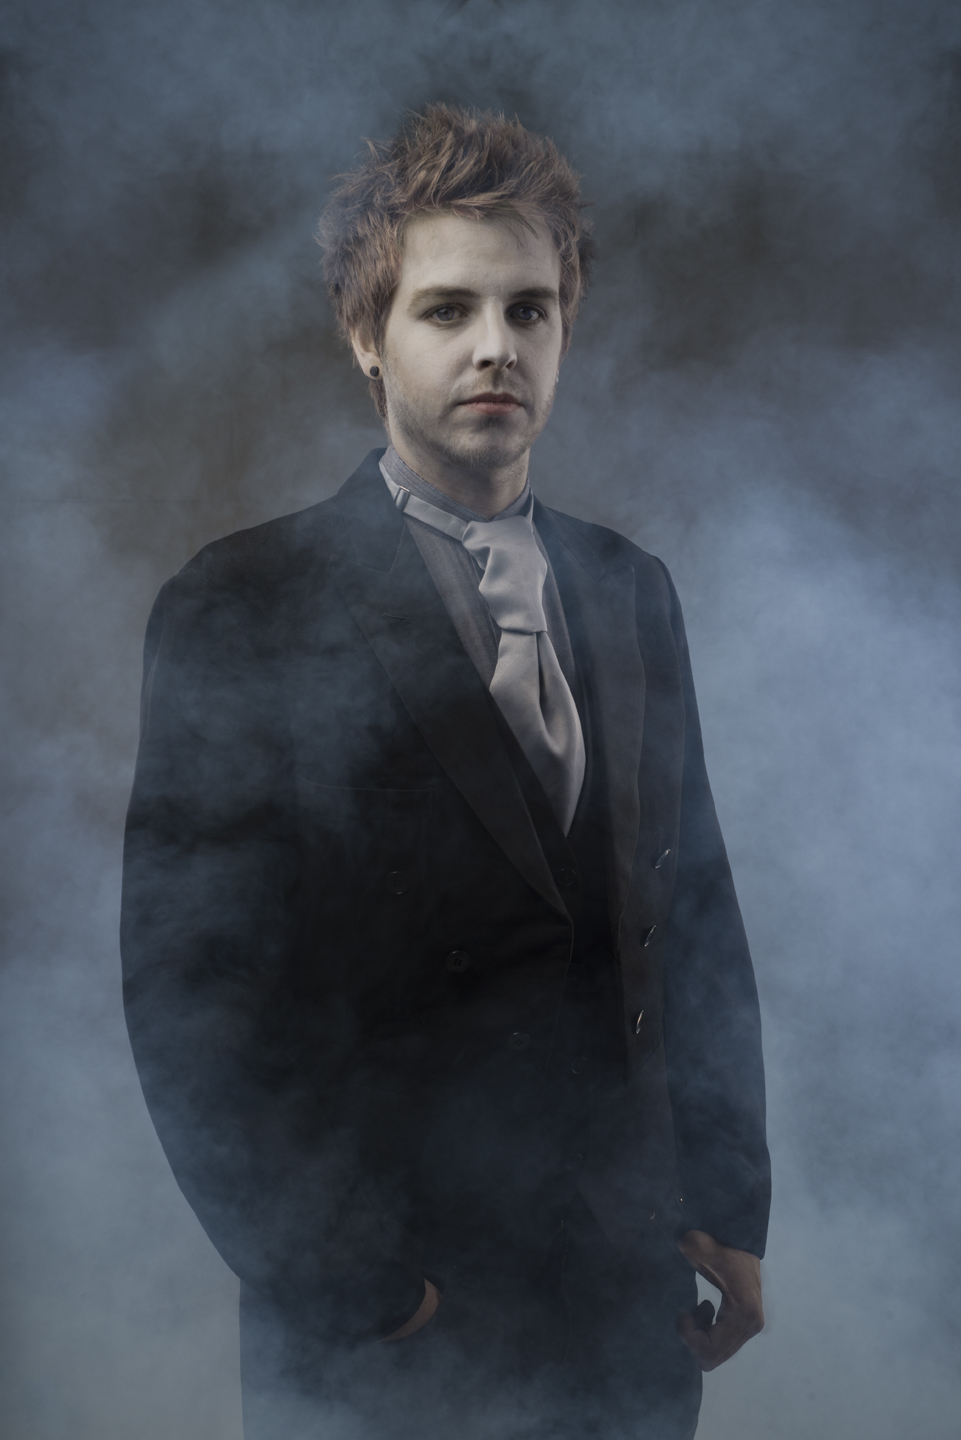 Vampire Photo shoot in 2014.